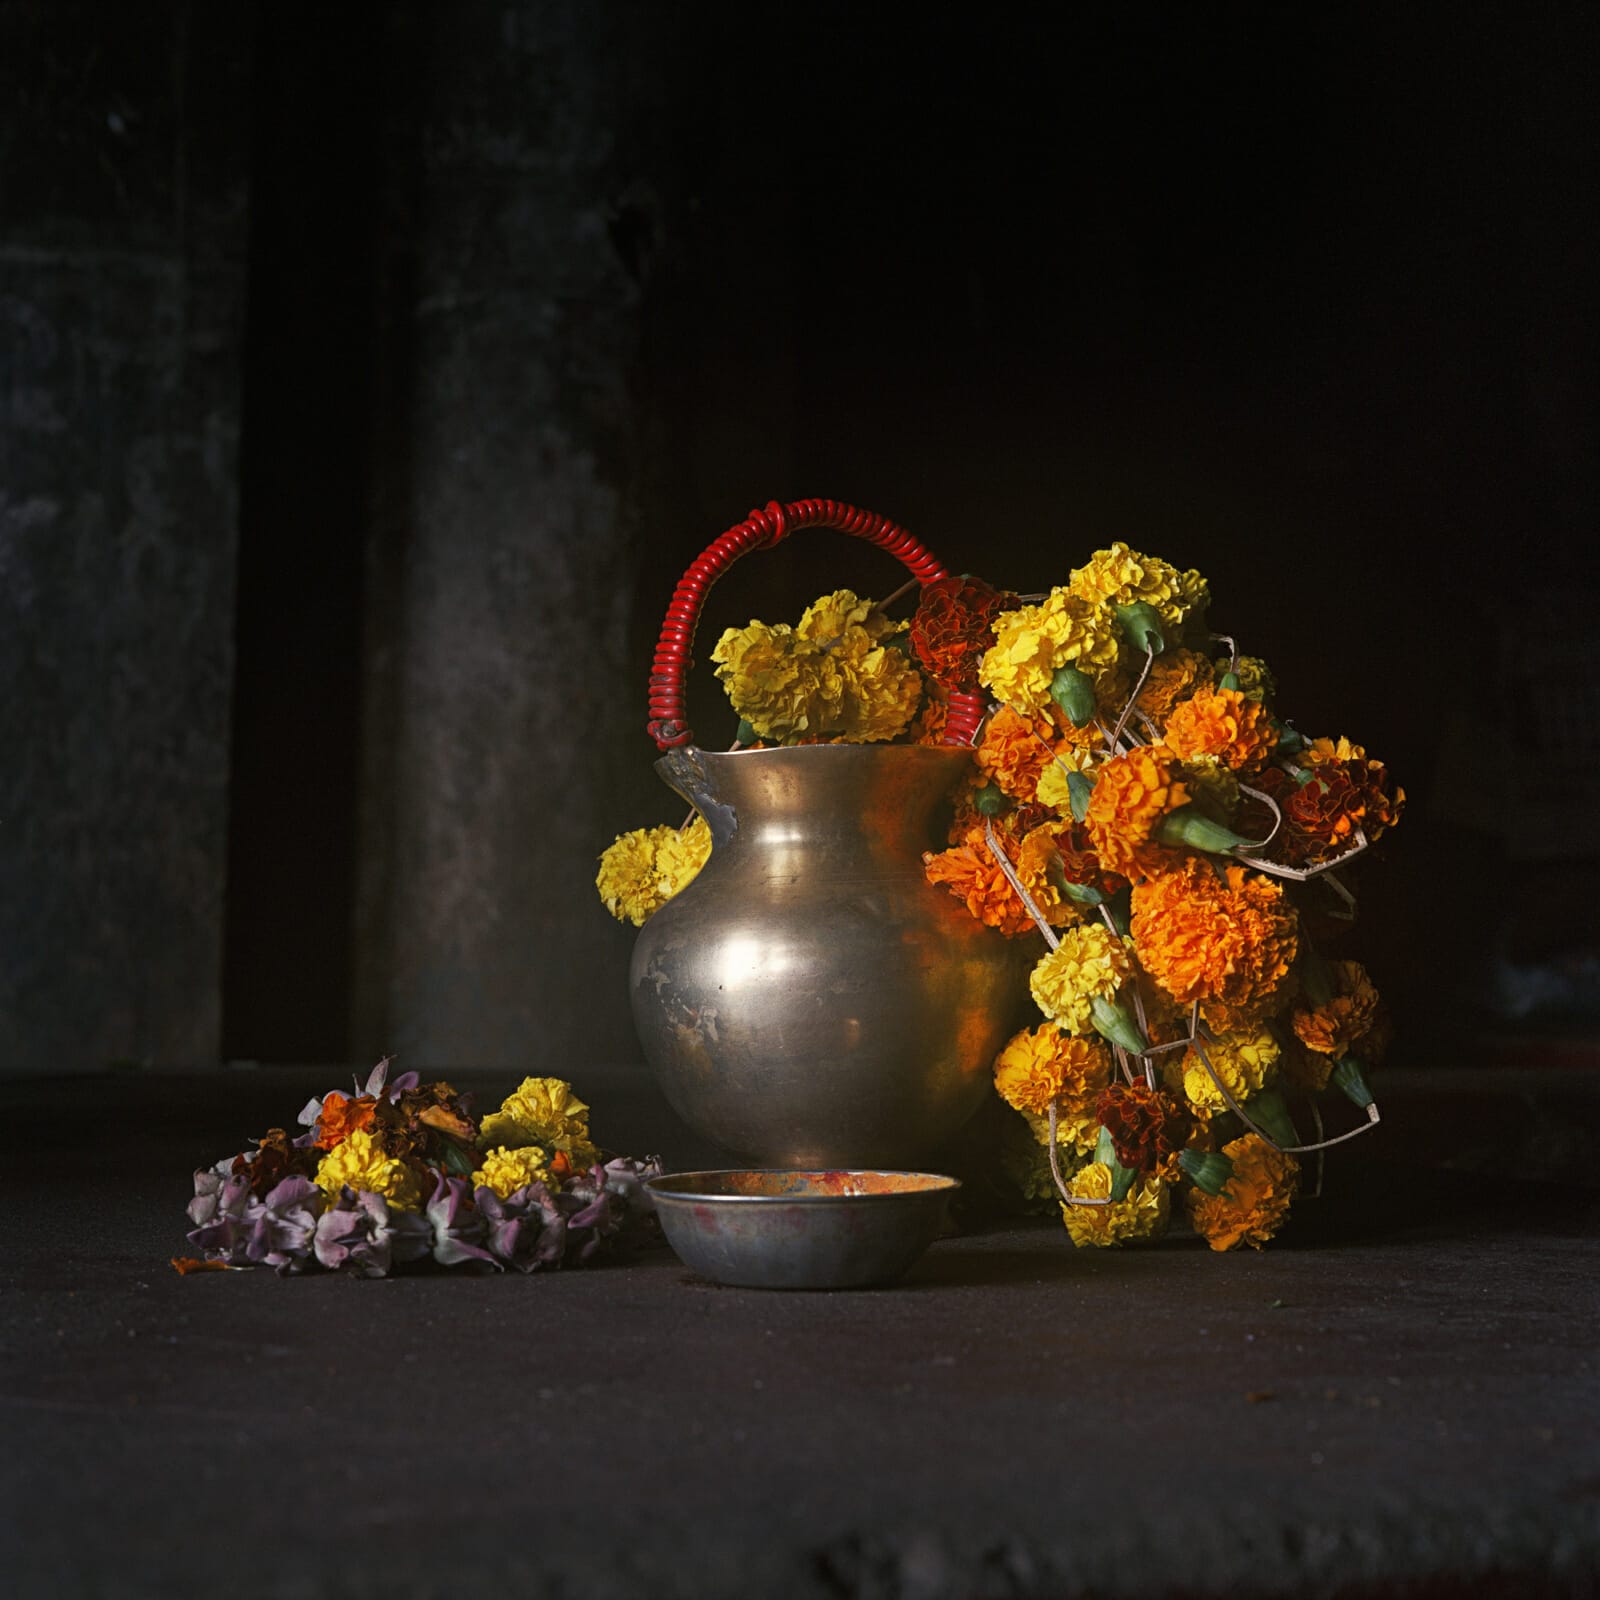 Nature morte sâdhu, marché aux fleurs, Calcutta